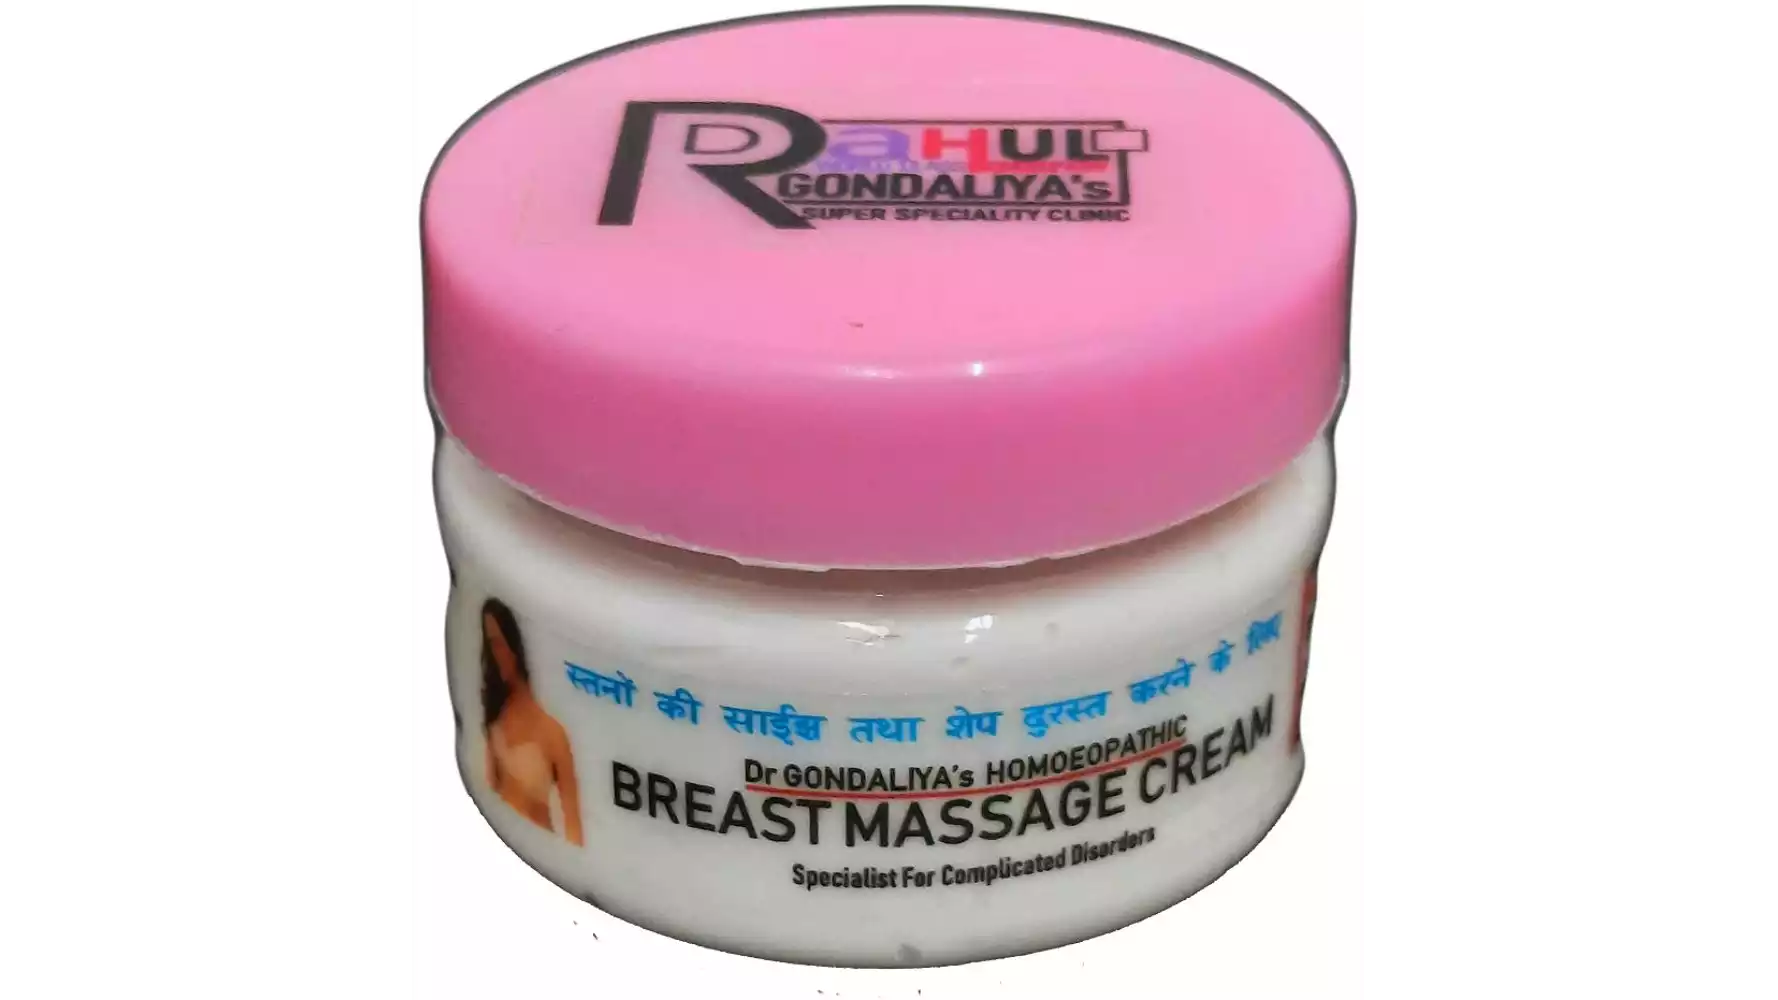 Dr Gondaliyas Homoeopathic Breast Massage Cream (50g)